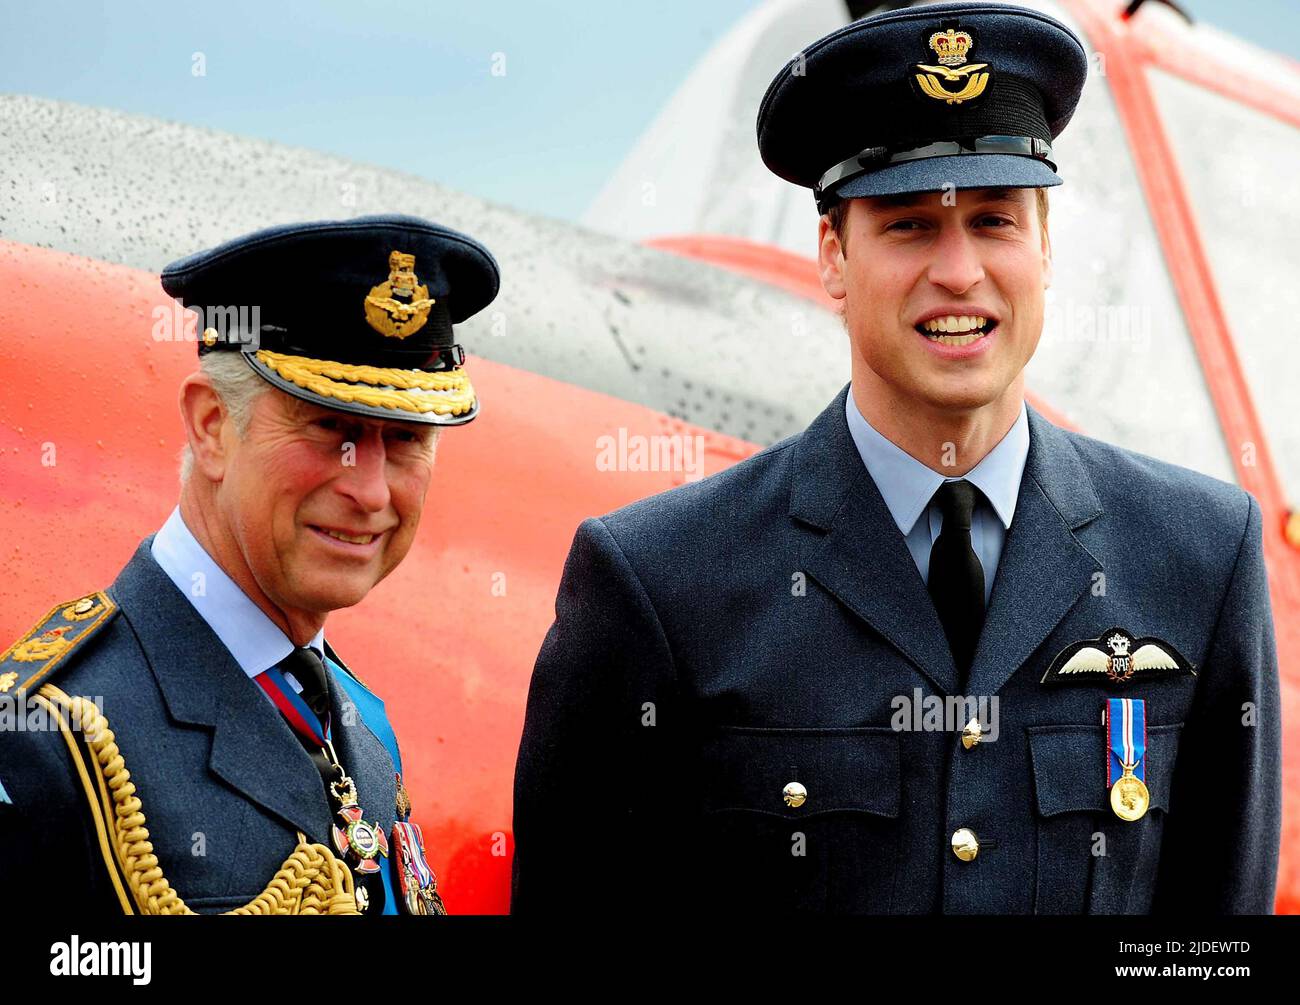 Foto del archivo de fecha 11/4/2008 del príncipe Guillermo y el príncipe de Gales en RAF Cranwell, Lincolnshire después de que Guillermo recibiera sus alas de RAF de su padre. El martes, el Duque de Cambridge celebra su cumpleaños de 40th. Fecha de emisión: Lunes 20 de junio de 2022. Foto de stock